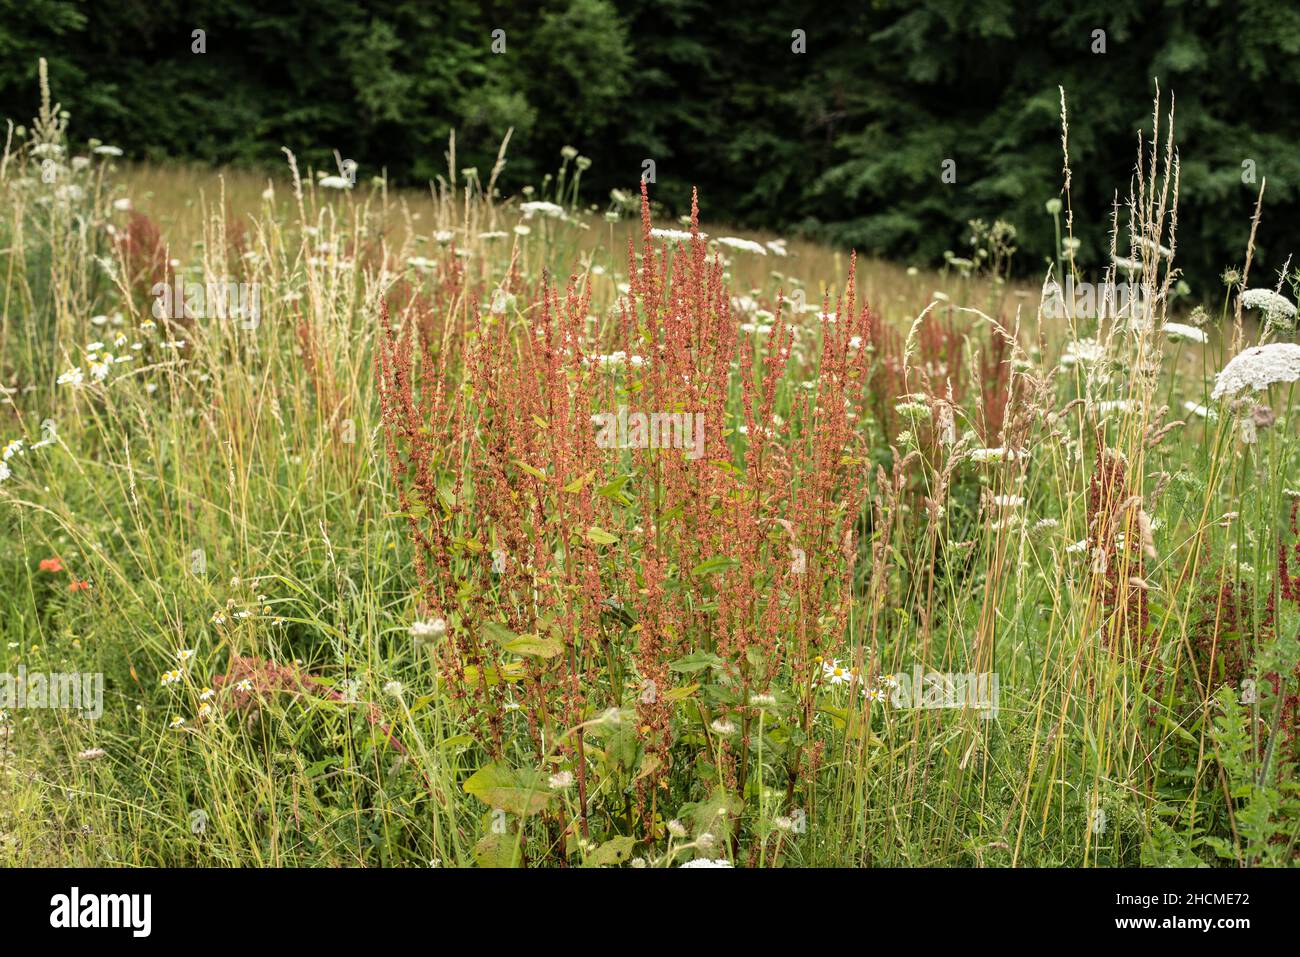 planta de flores de un sorrel común o de jardín en un prado al borde del bosque Foto de stock